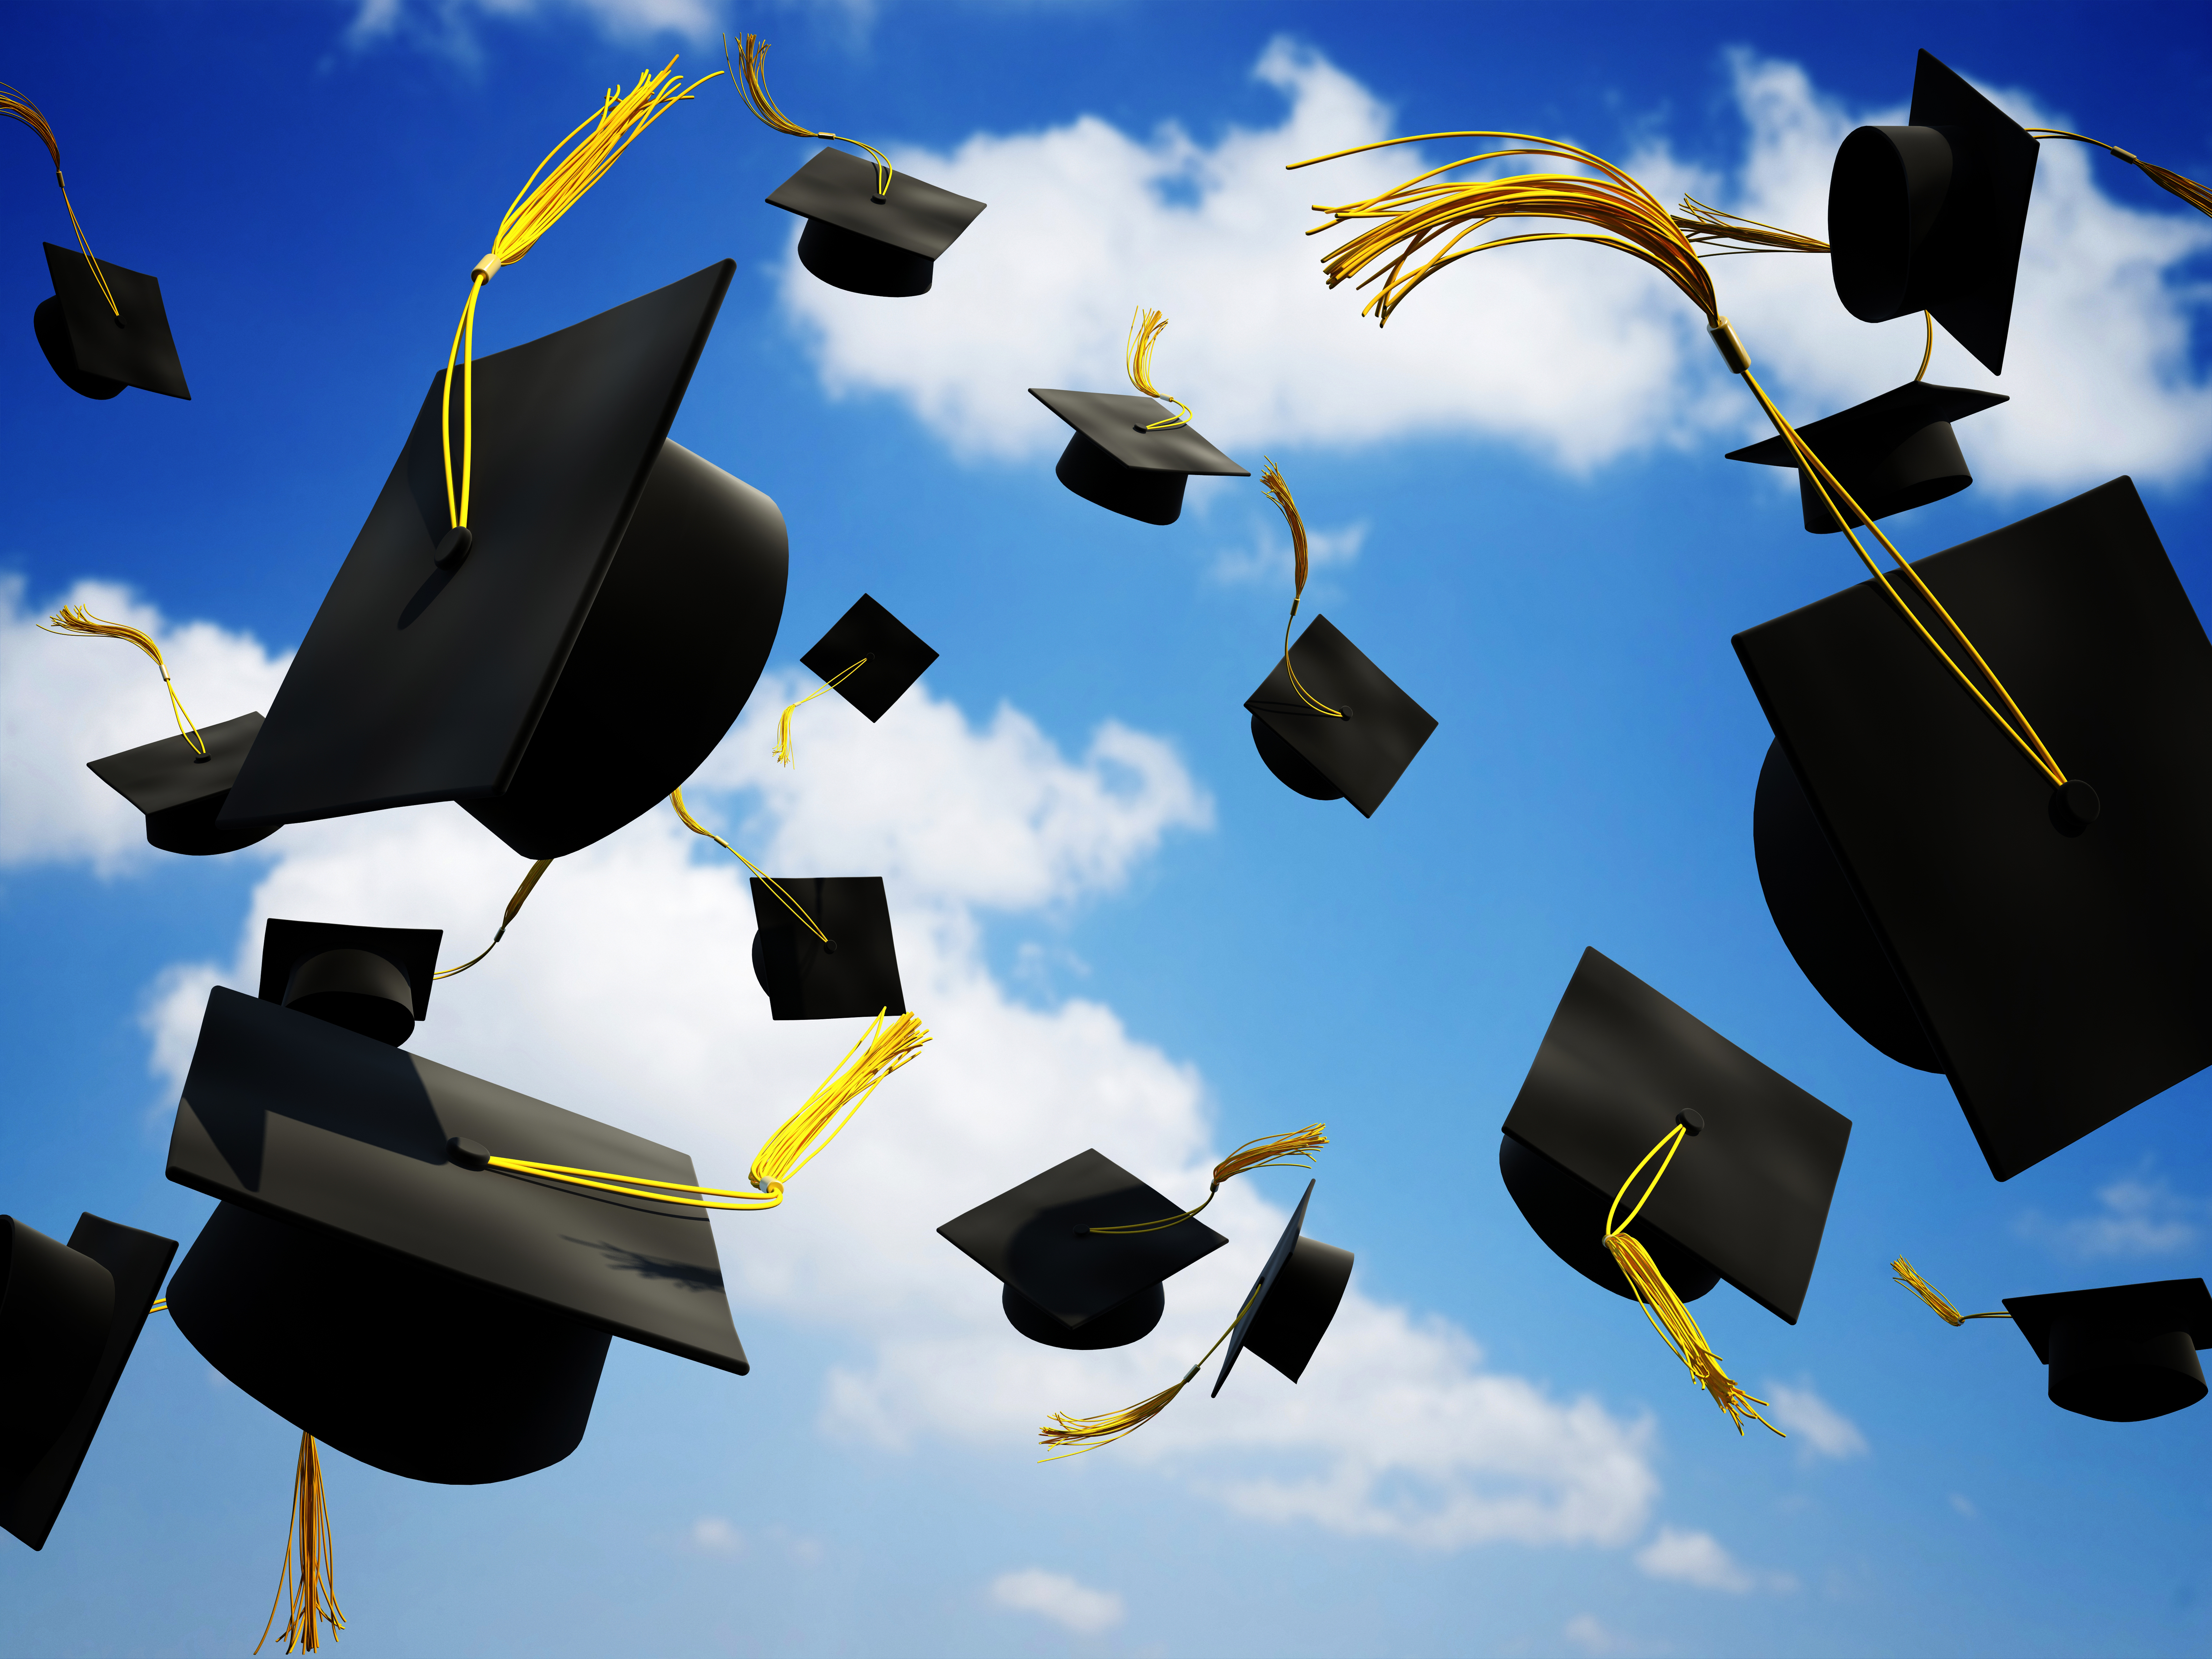 Graduation Caps Thrown In The Air - Graduation Caps Being Thrown - HD Wallpaper 